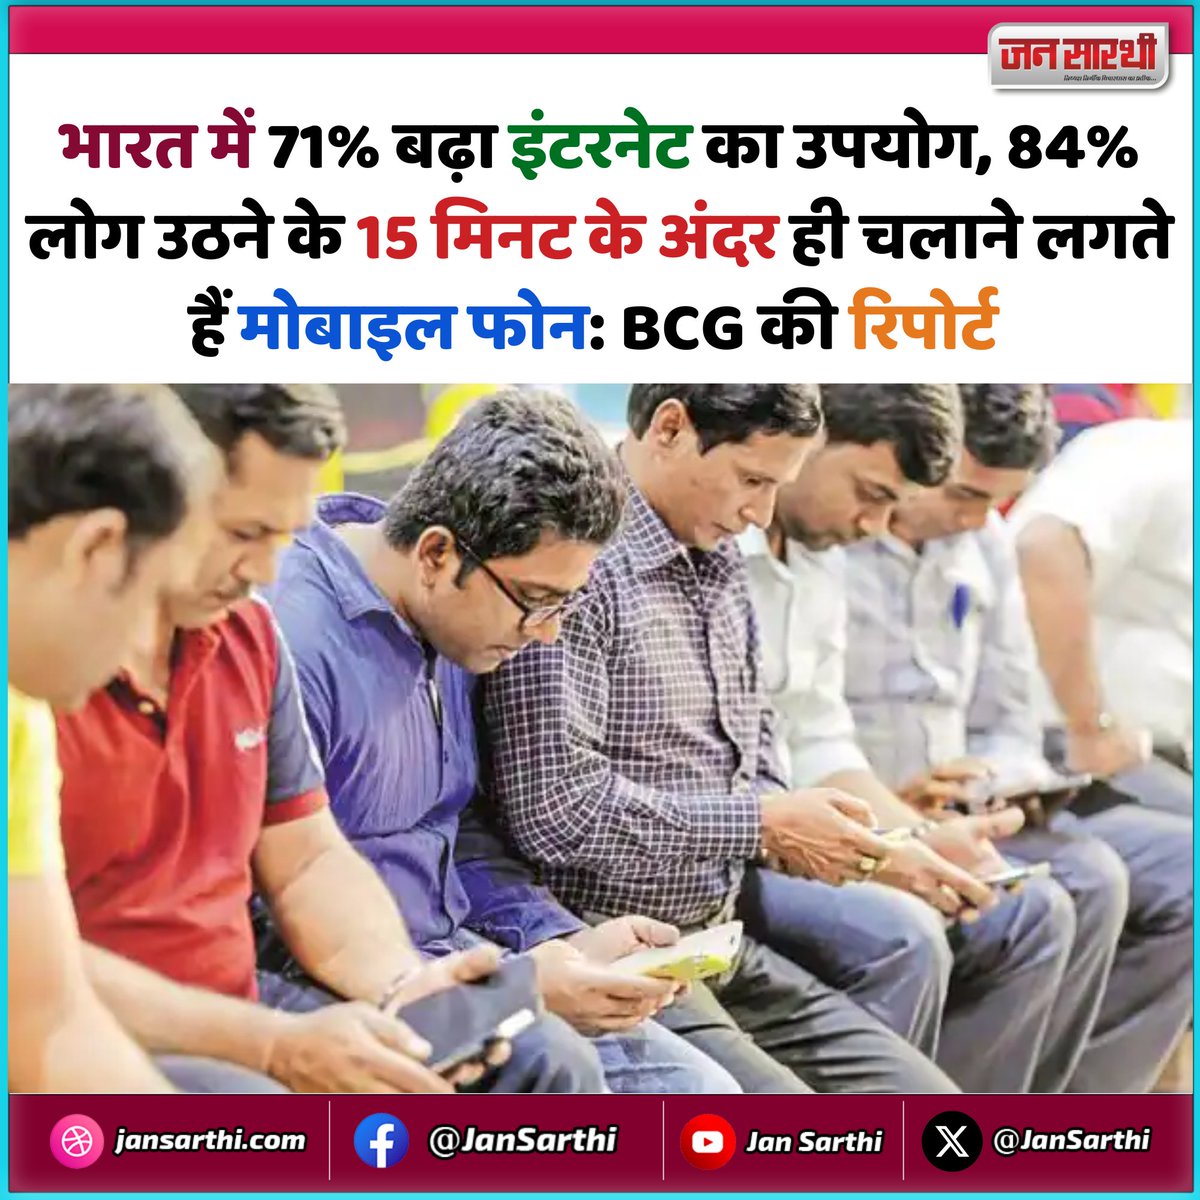 🔷 भारत में 71% बढ़ा इंटरनेट का उपयोग, 84% लोग उठने के 15 मिनट के अंदर ही चलाने लगते हैं मोबाइल फोन: BCG की रिपोर्ट 

#InternetUsage #MobilePhone #BCGReport